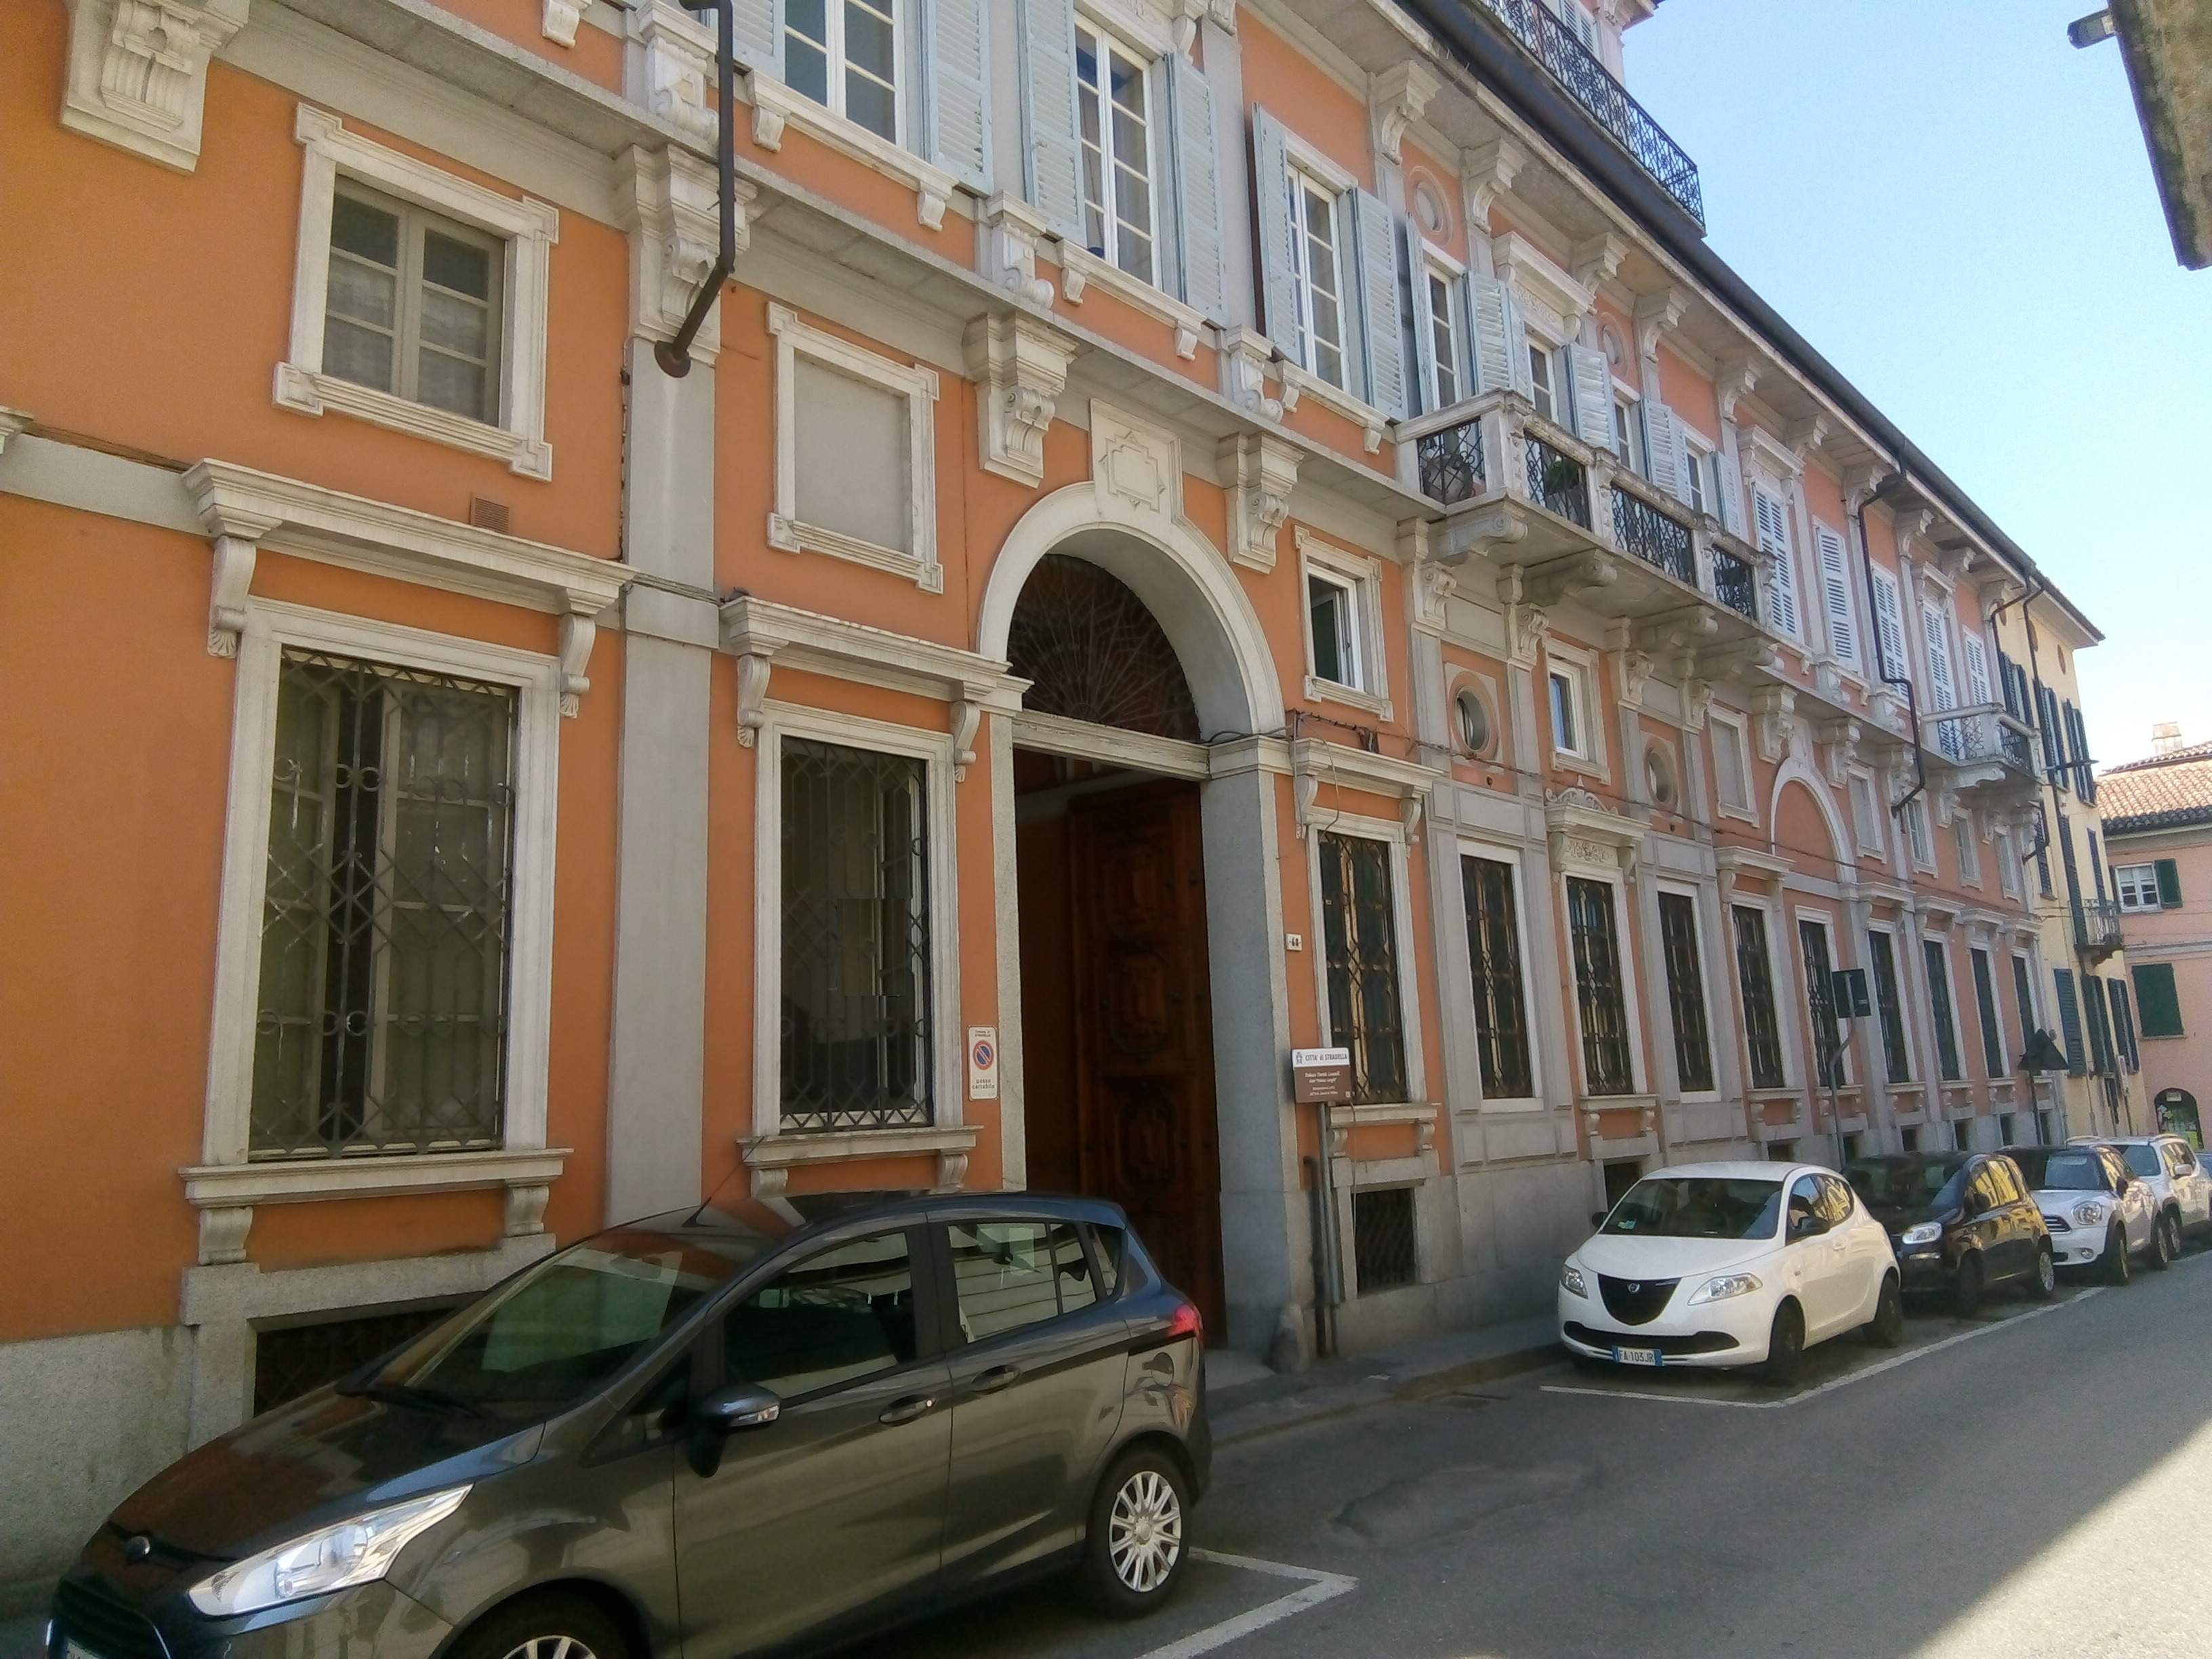 PALAZZO DAVIDE LOCATELLI, detto ‘Palazzo Longhi’